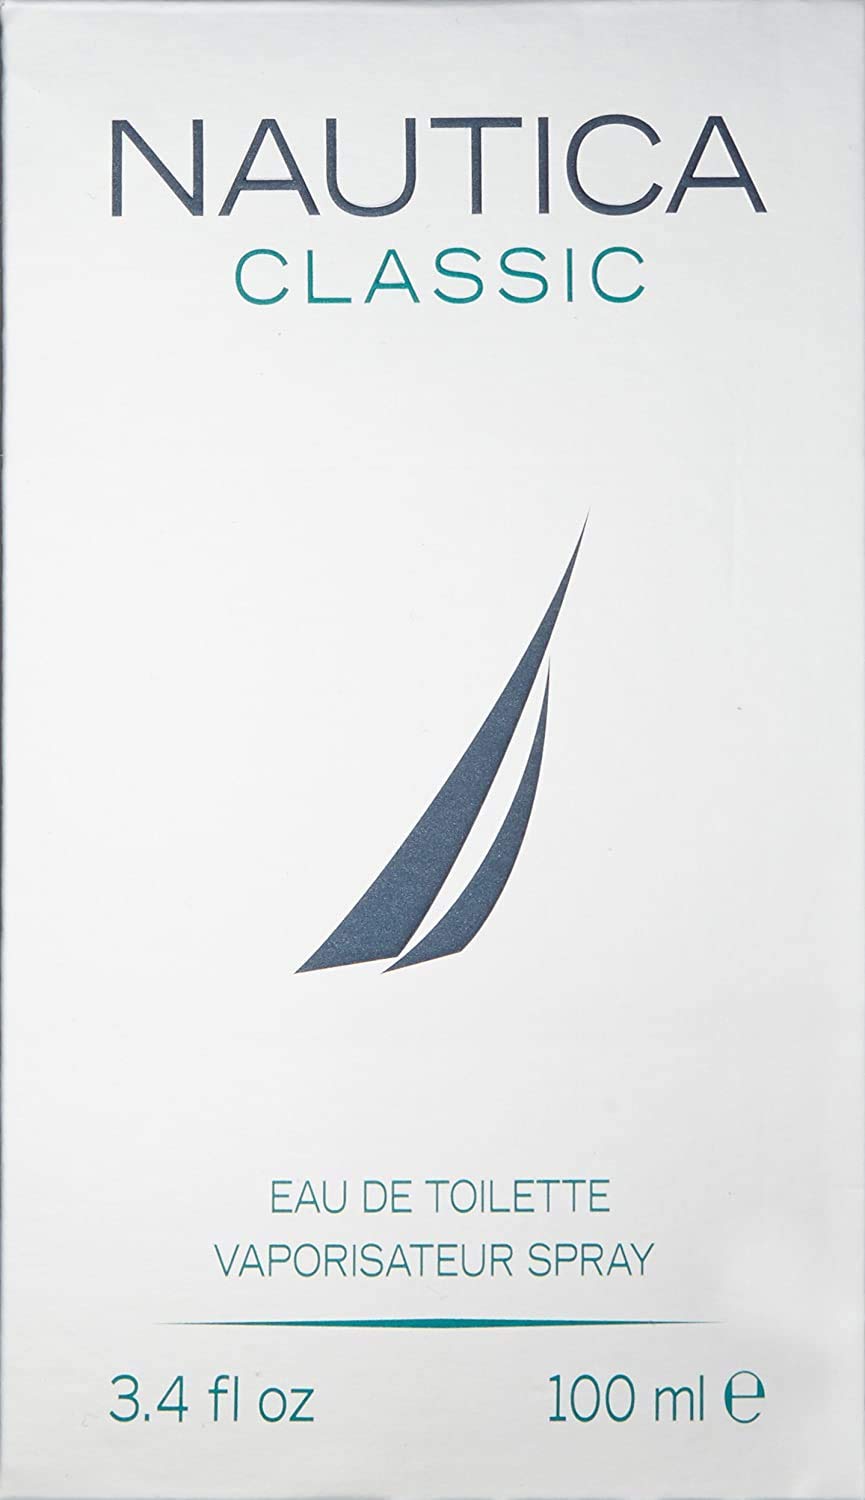 Nautica Classic for Men by Nautica 3.4 oz 100ml EDT Spray with Nautica Blue Eau De Toilette Spray for Men, 3.4 Fl Oz